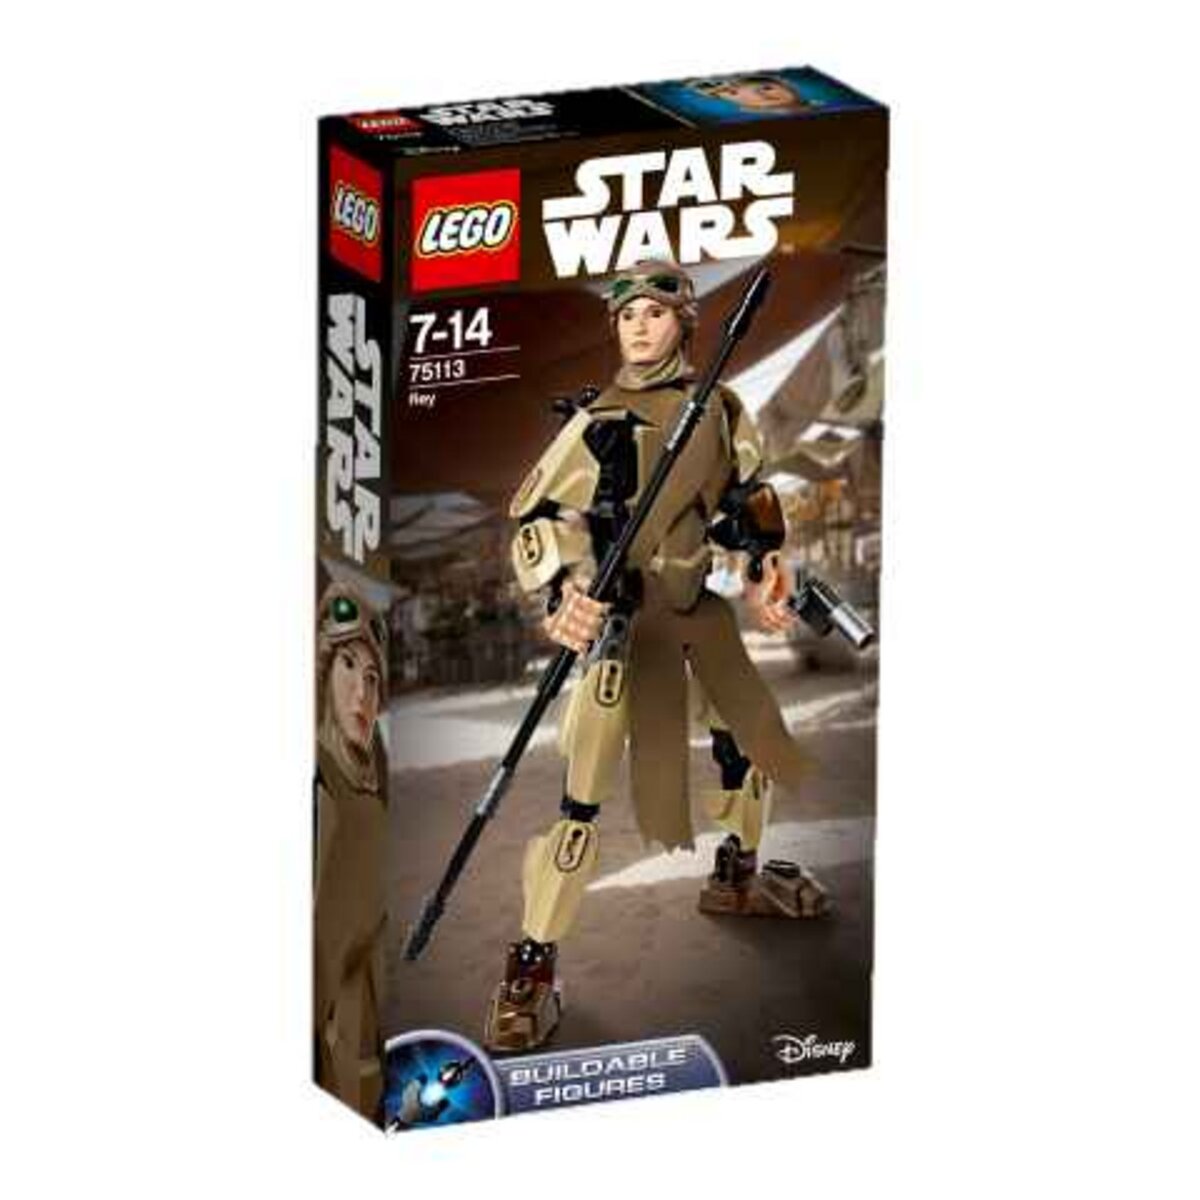 LEGO Star Wars 75113 - Rey